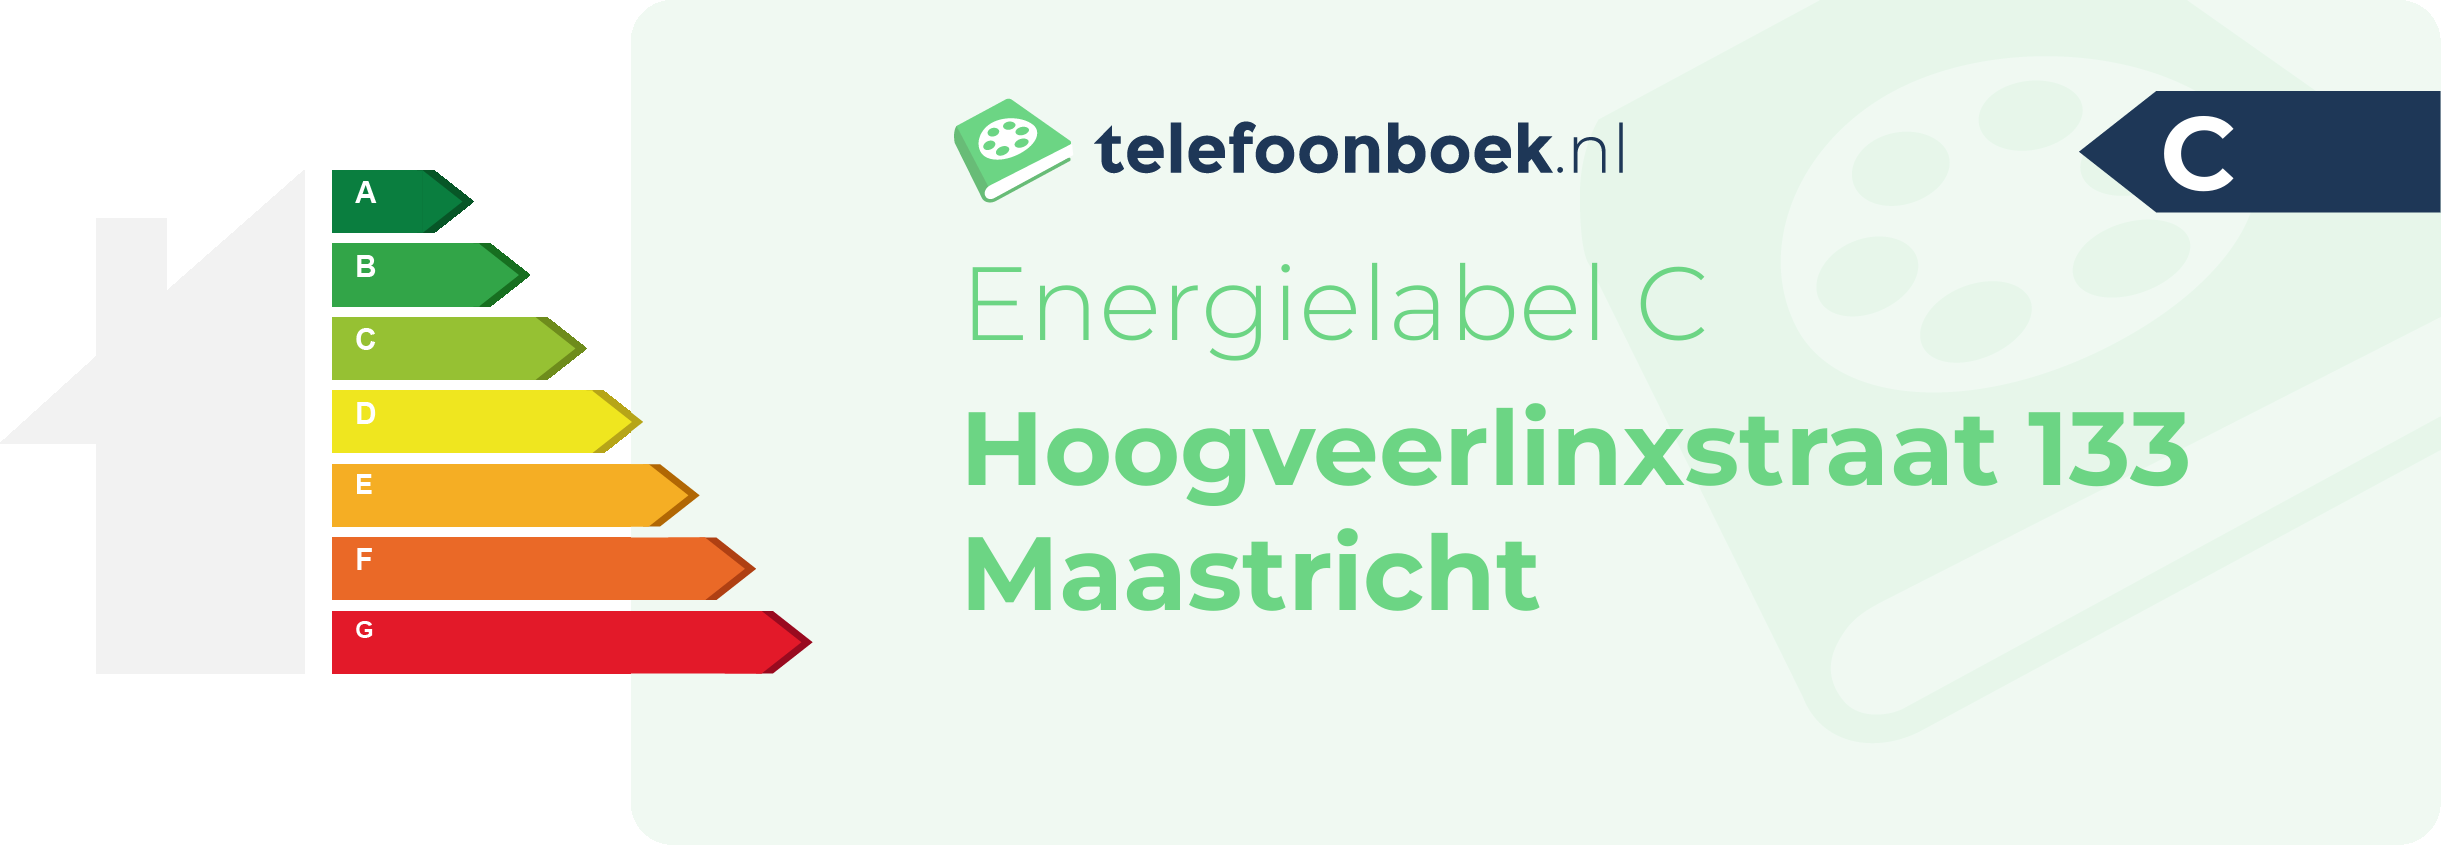 Energielabel Hoogveerlinxstraat 133 Maastricht